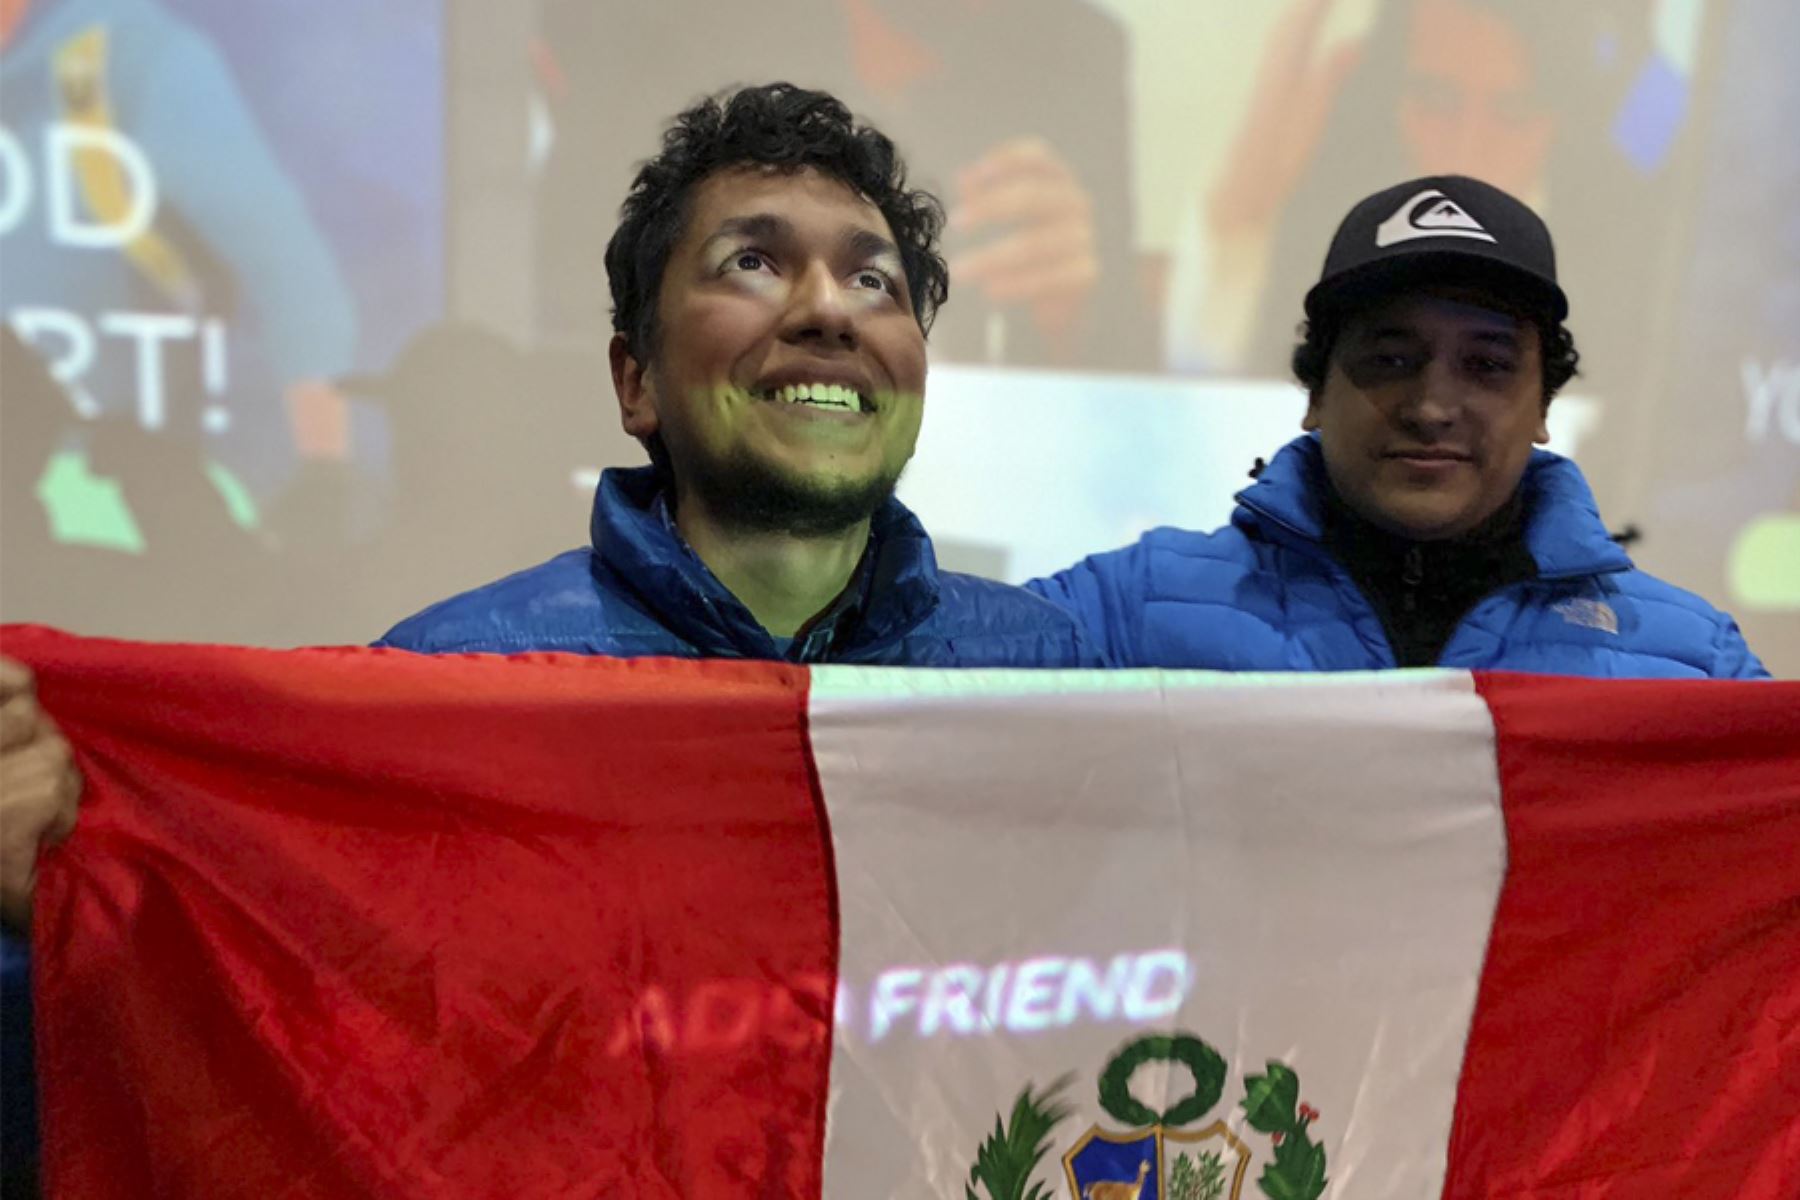 El peruano participó en un torneo regional en el Perú para clasificar a Chile. Foto: Pokestgo